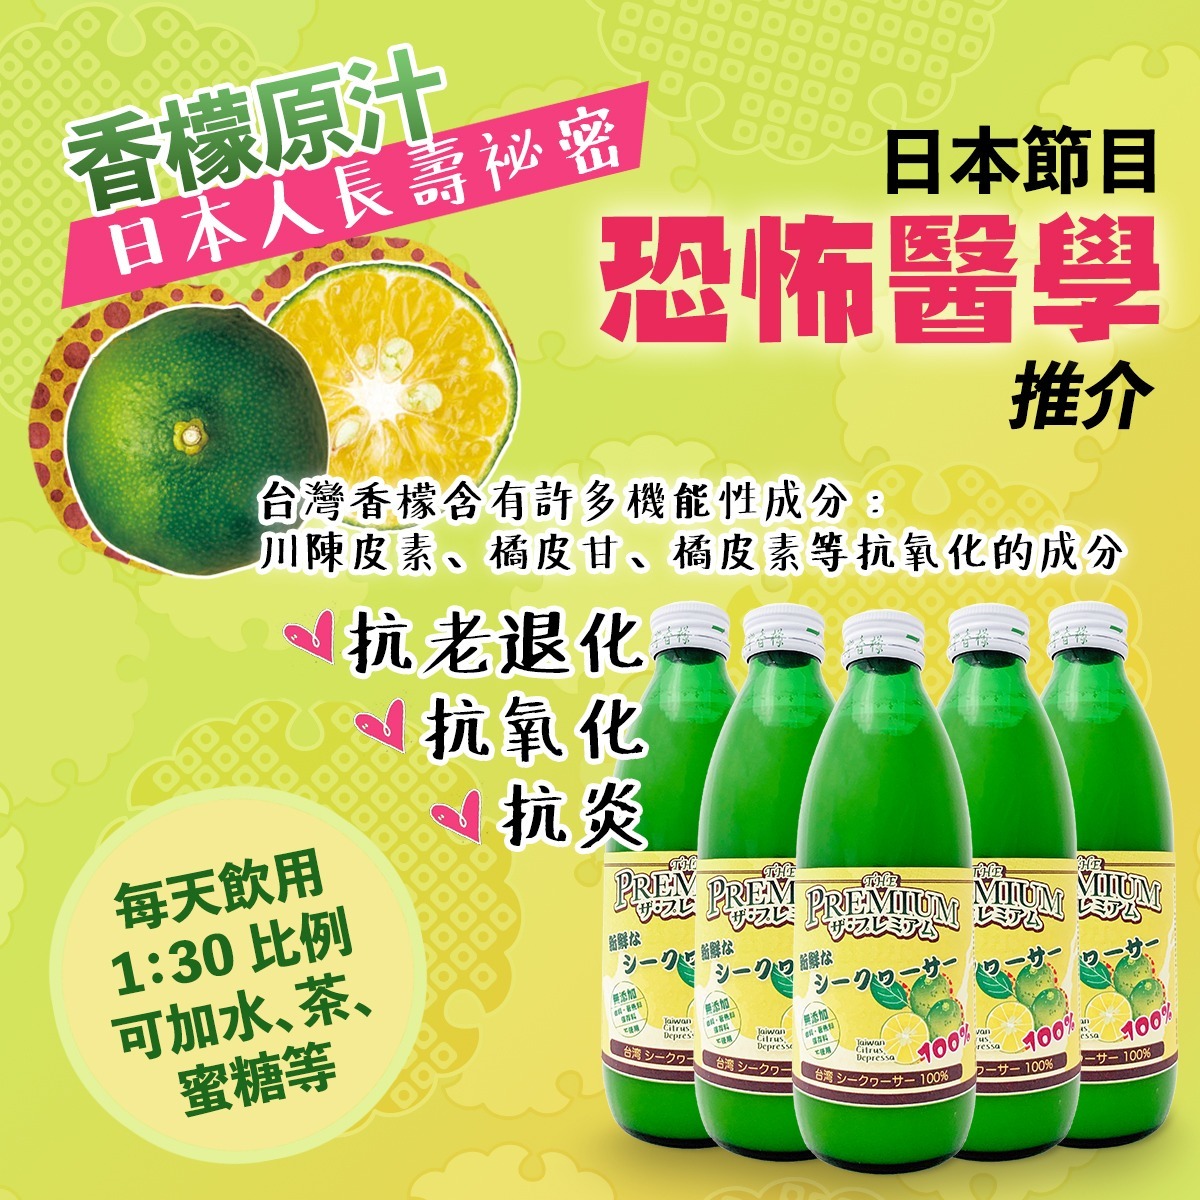 台灣香檬原汁 (300ml)